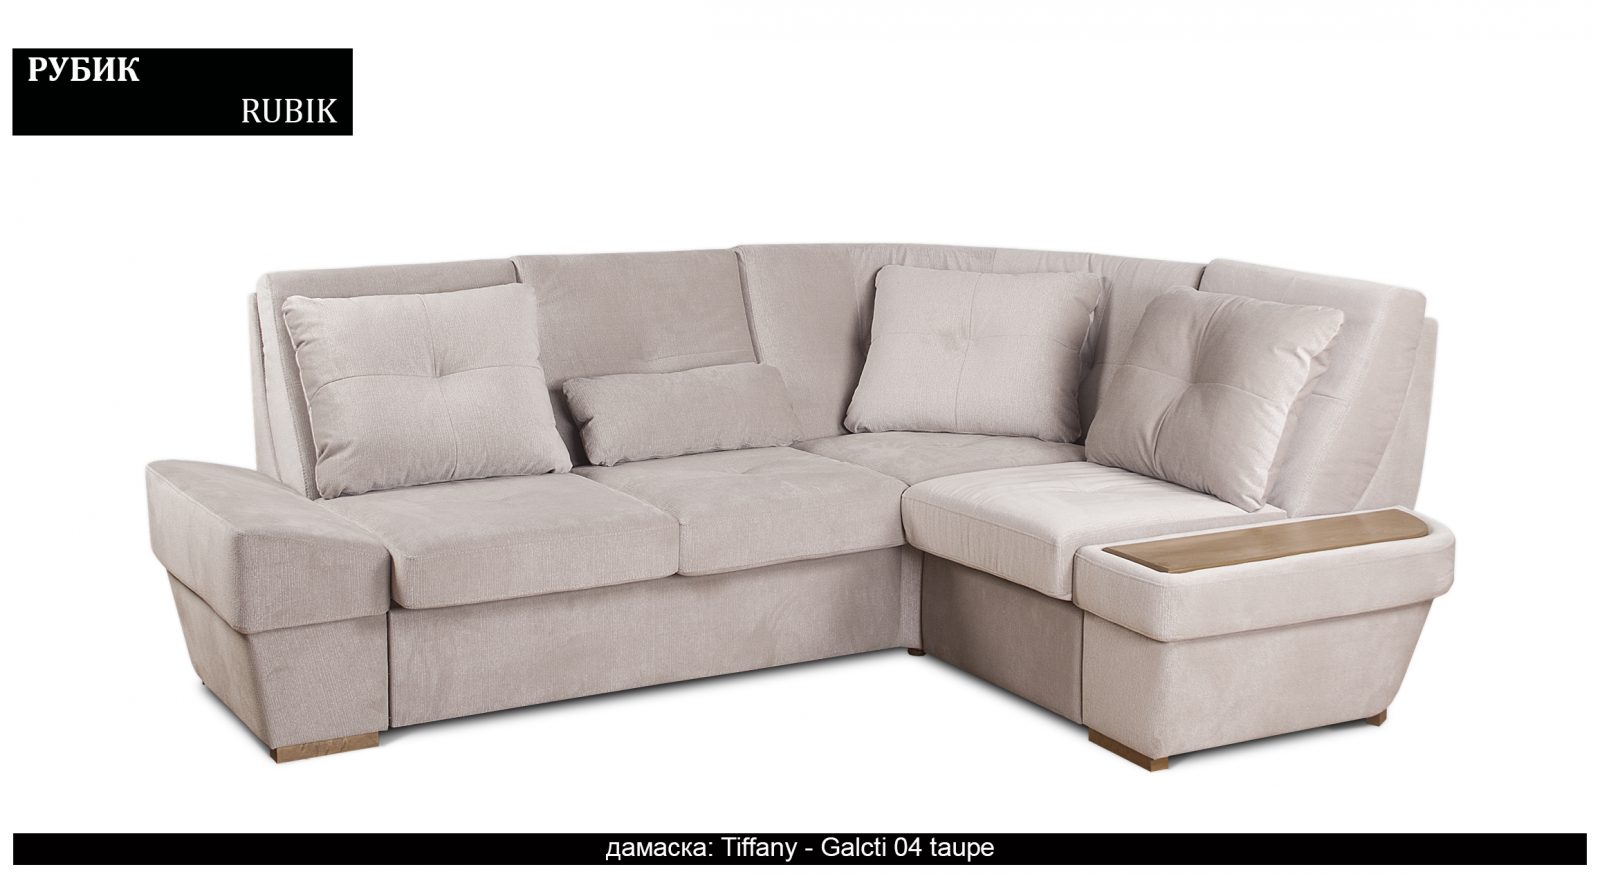 Разтегателен луксозен диван |“РУБИК“| Руди-Ан